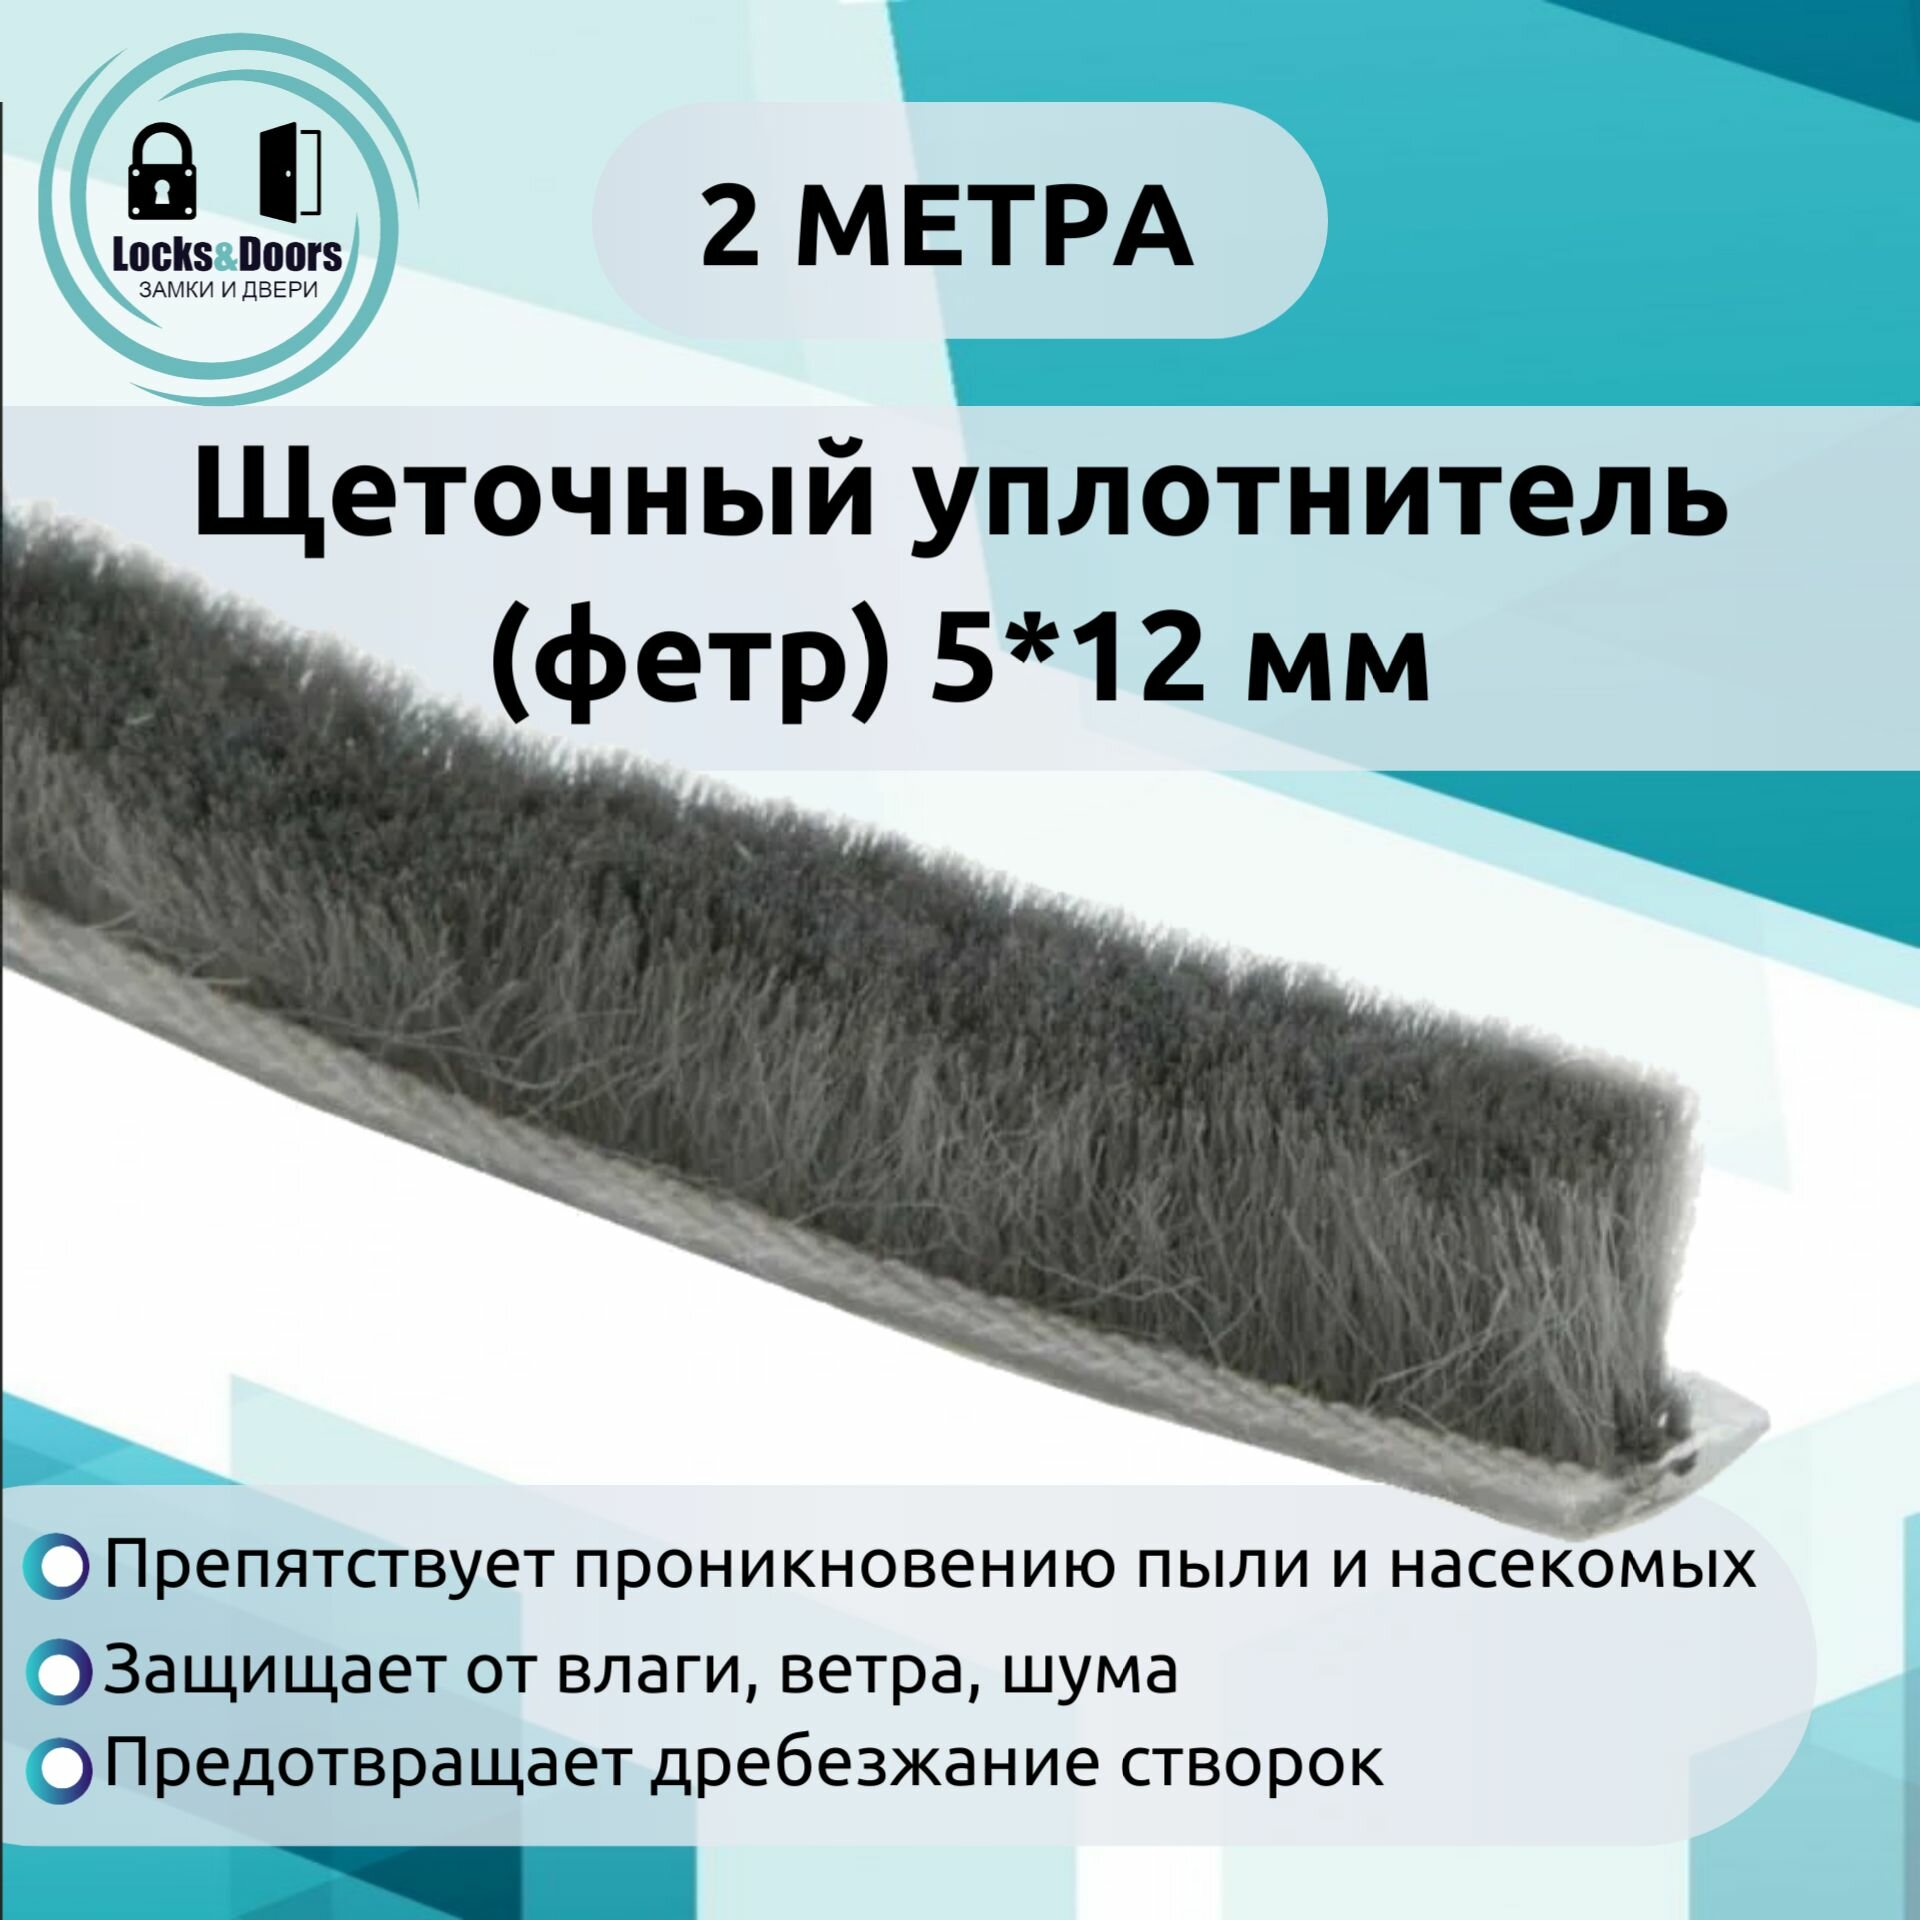 Щеточный уплотнитель (фетр) для дверей и окон 5*12 мм (2 метра)